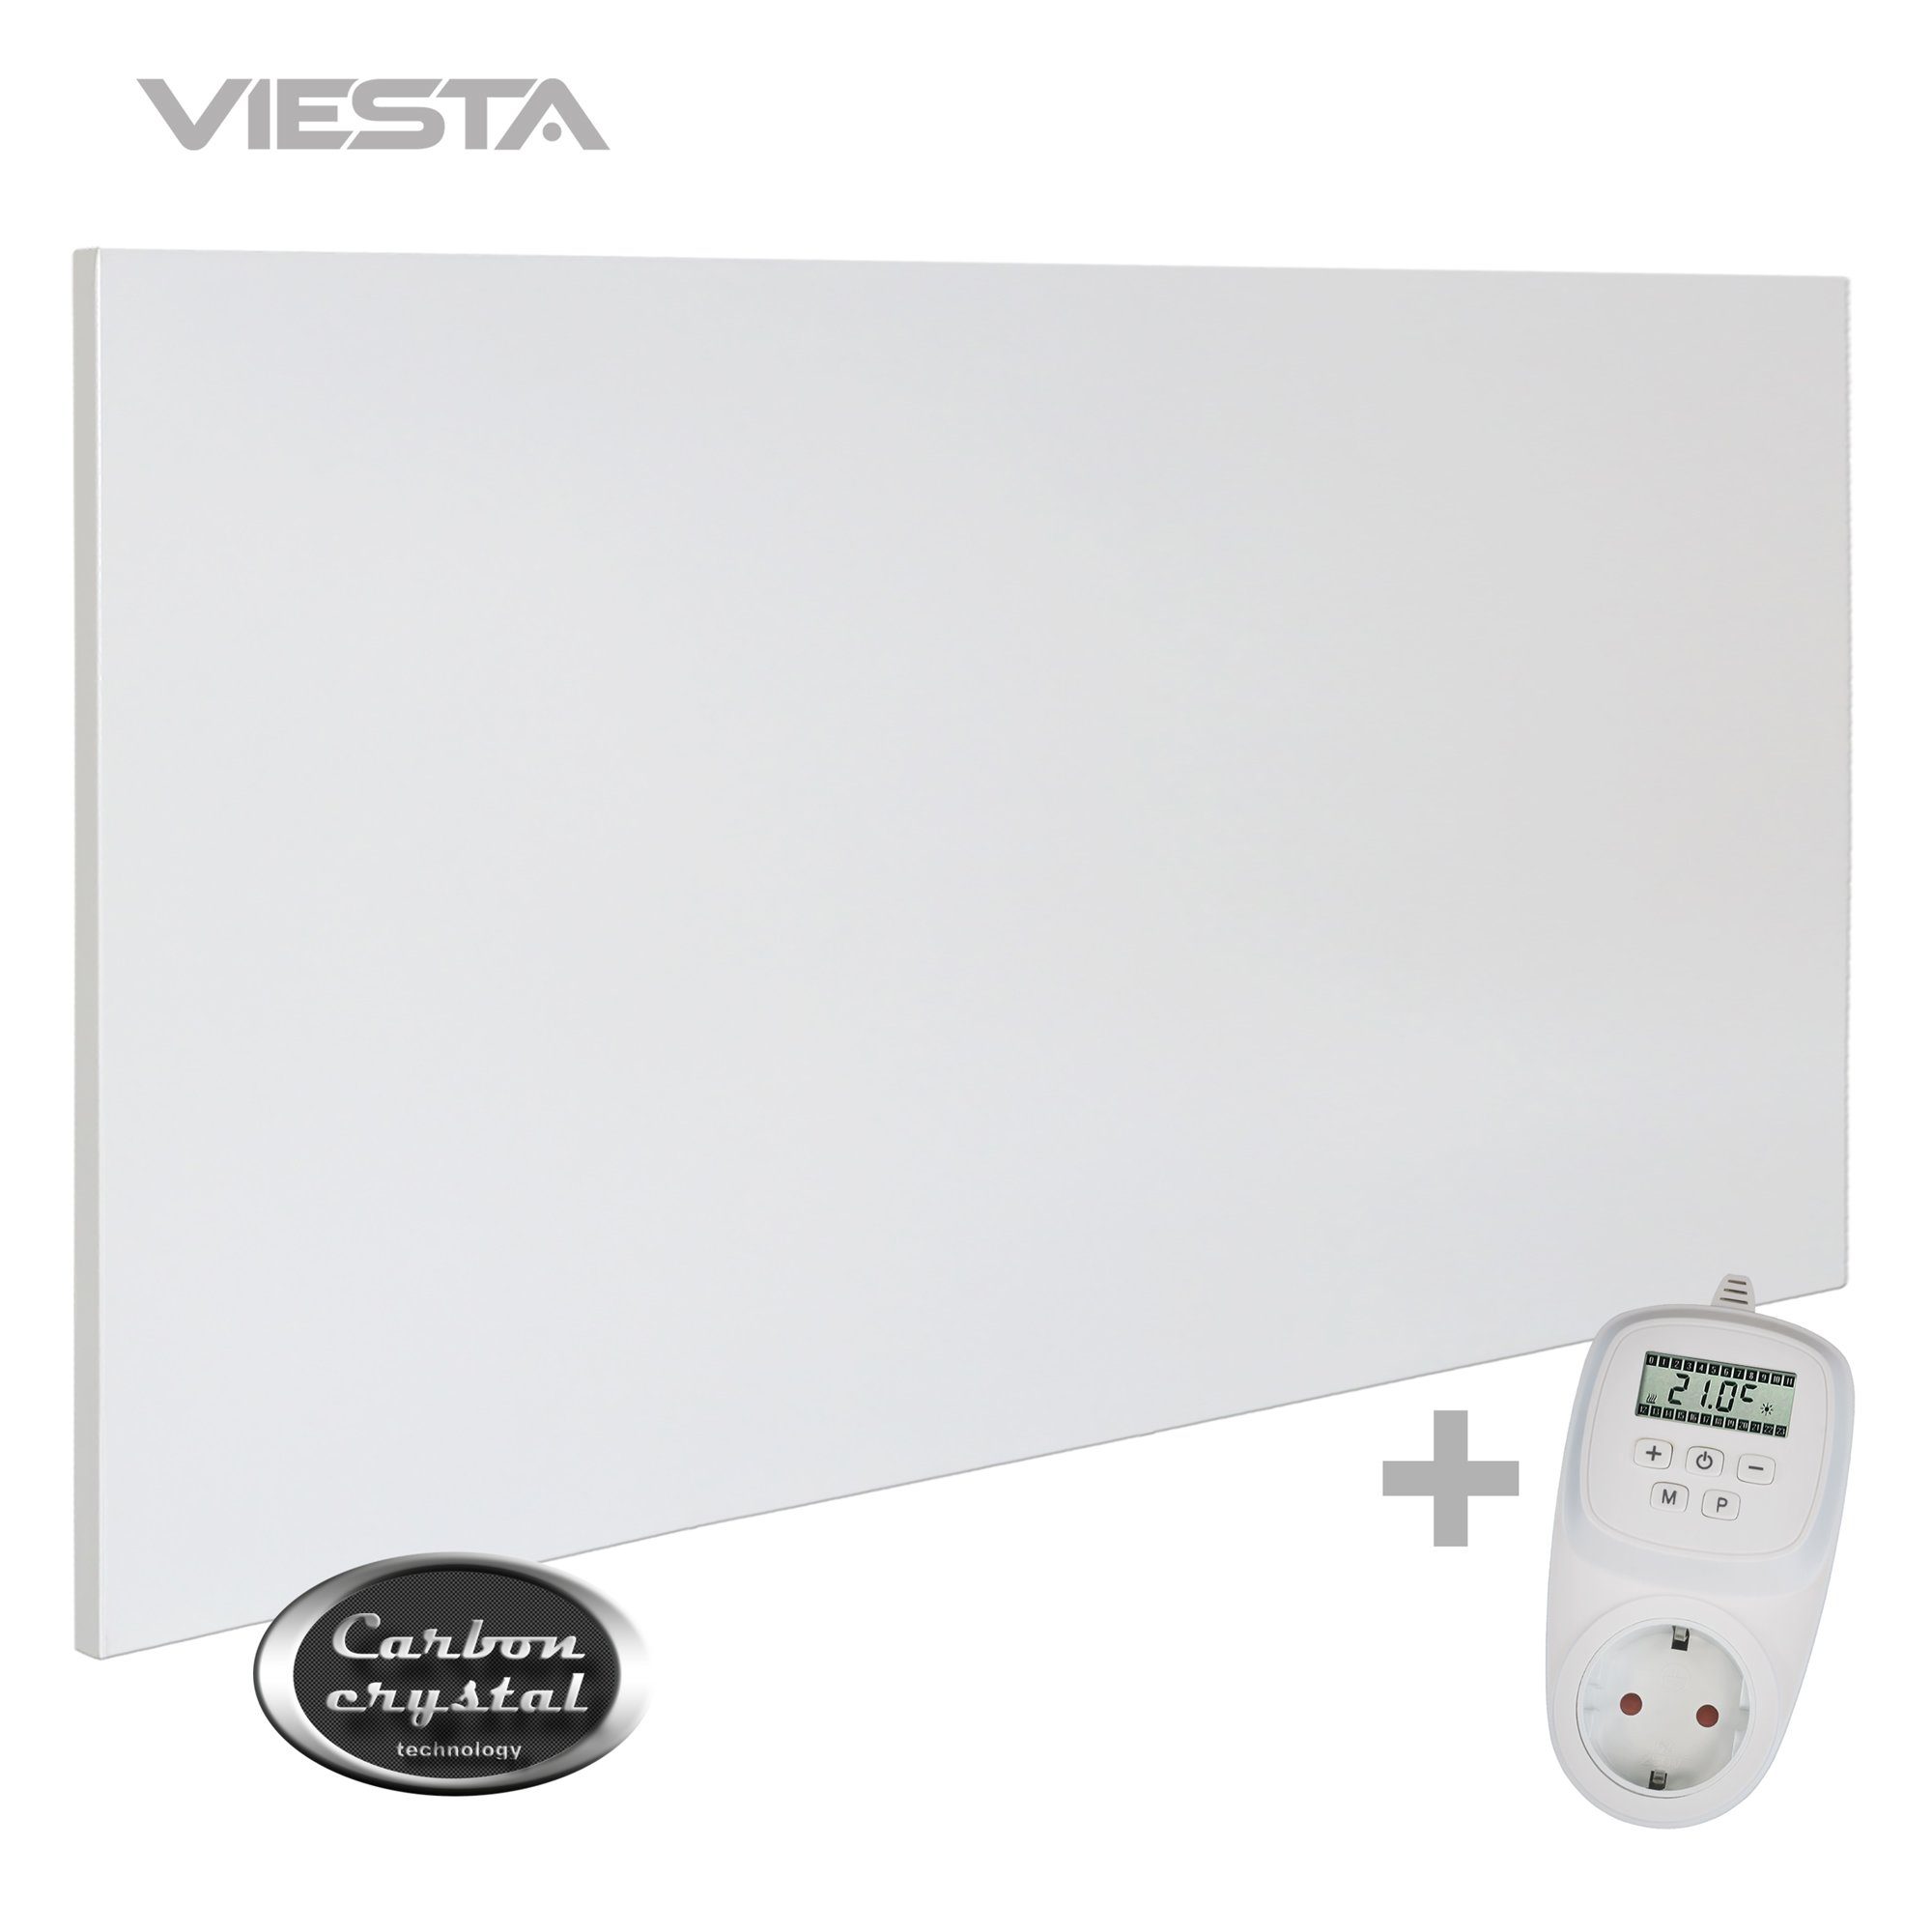 VIESTA ohne Carbon 700 TH12, Wandheizung, - VIESTA Technologie), Rahmen Thermostat TH12 VIESTA Infrarotheizung (neueste H700 weiß, Paneelheizkörper H700 ultraflache + Watt, Crystal